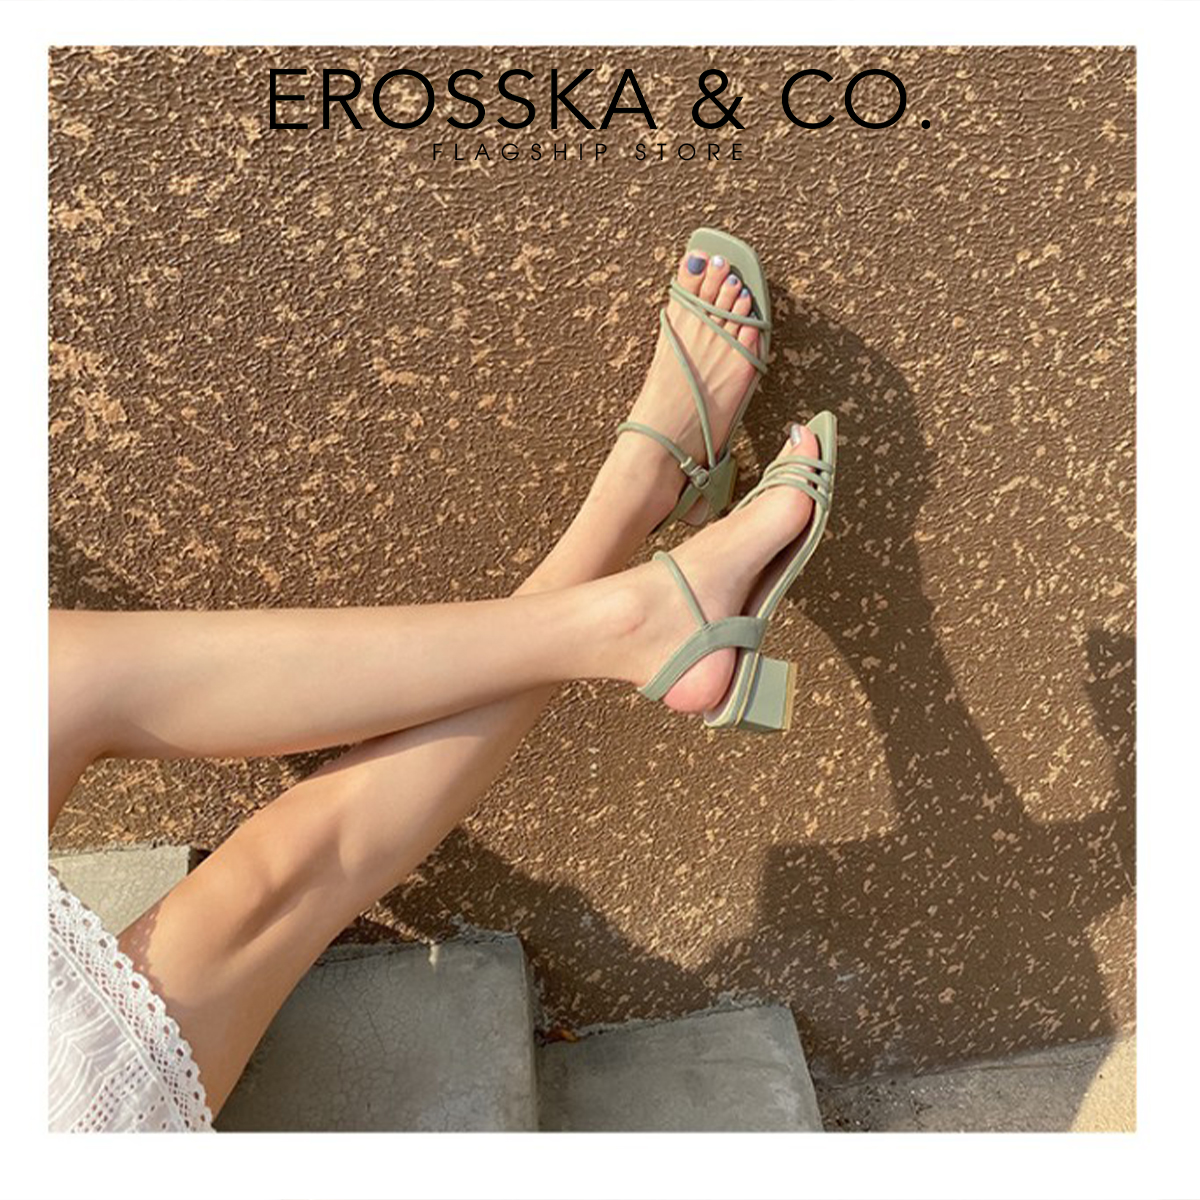 Erosska - Giày sandal cao gót hở mũi phối dây quai mảnh cao 5cm màu nude - EB065